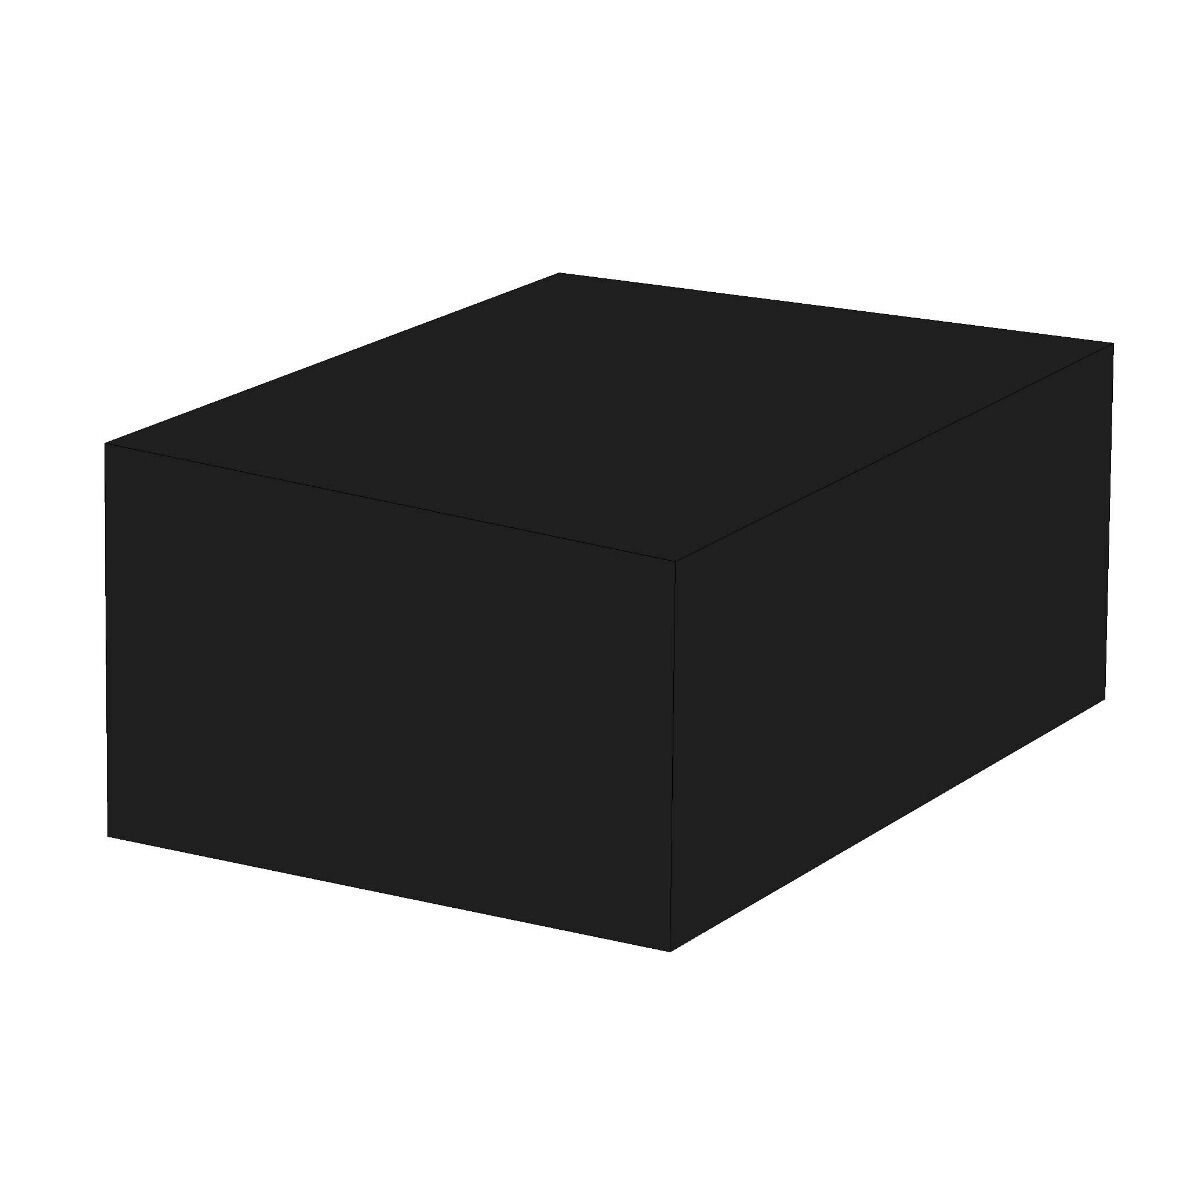 cov-6seat-cube-sq3.jpg